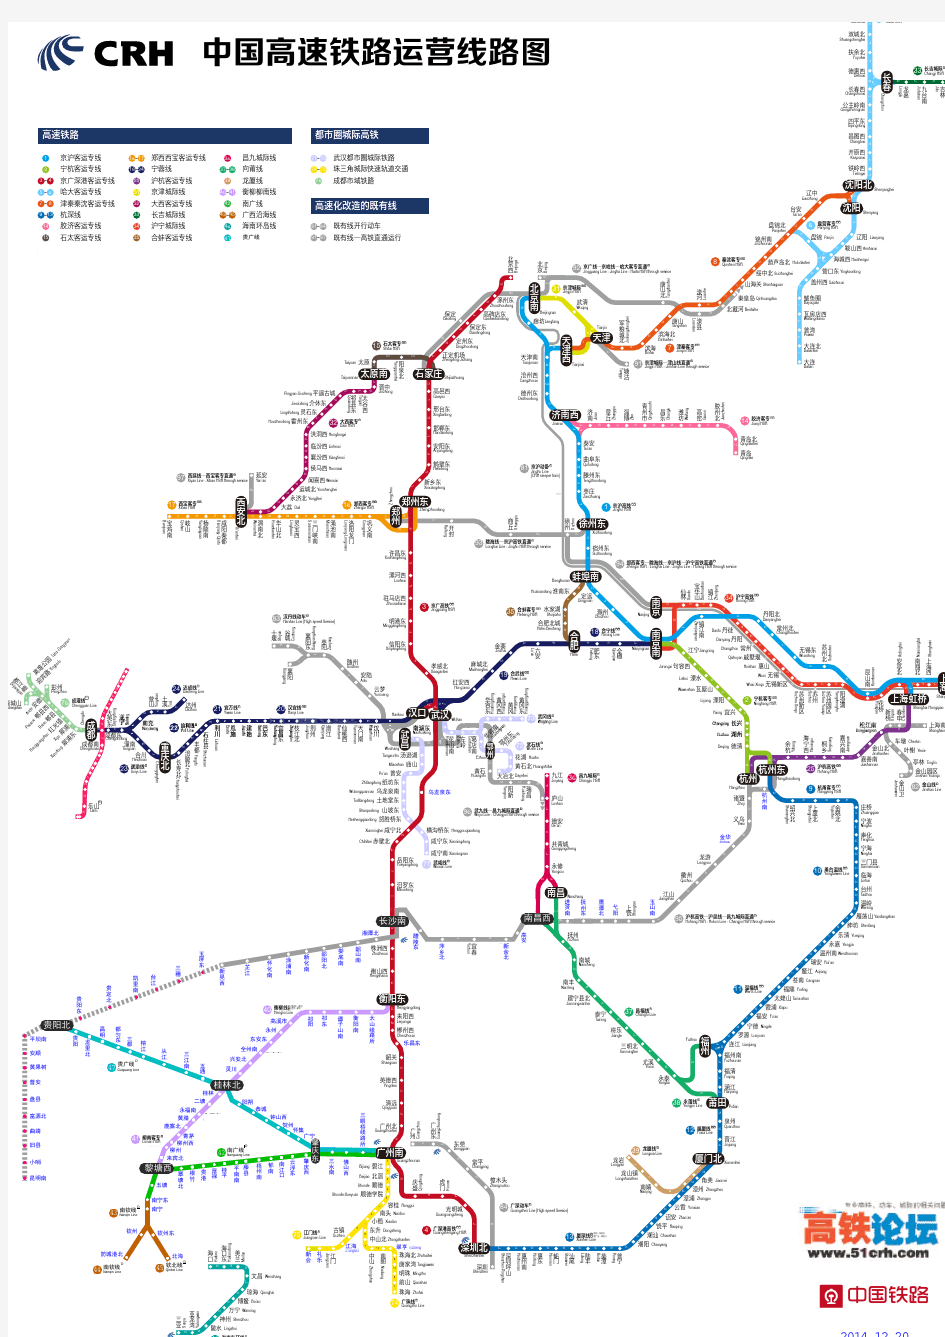 中国高铁运营线路示意图20141220版